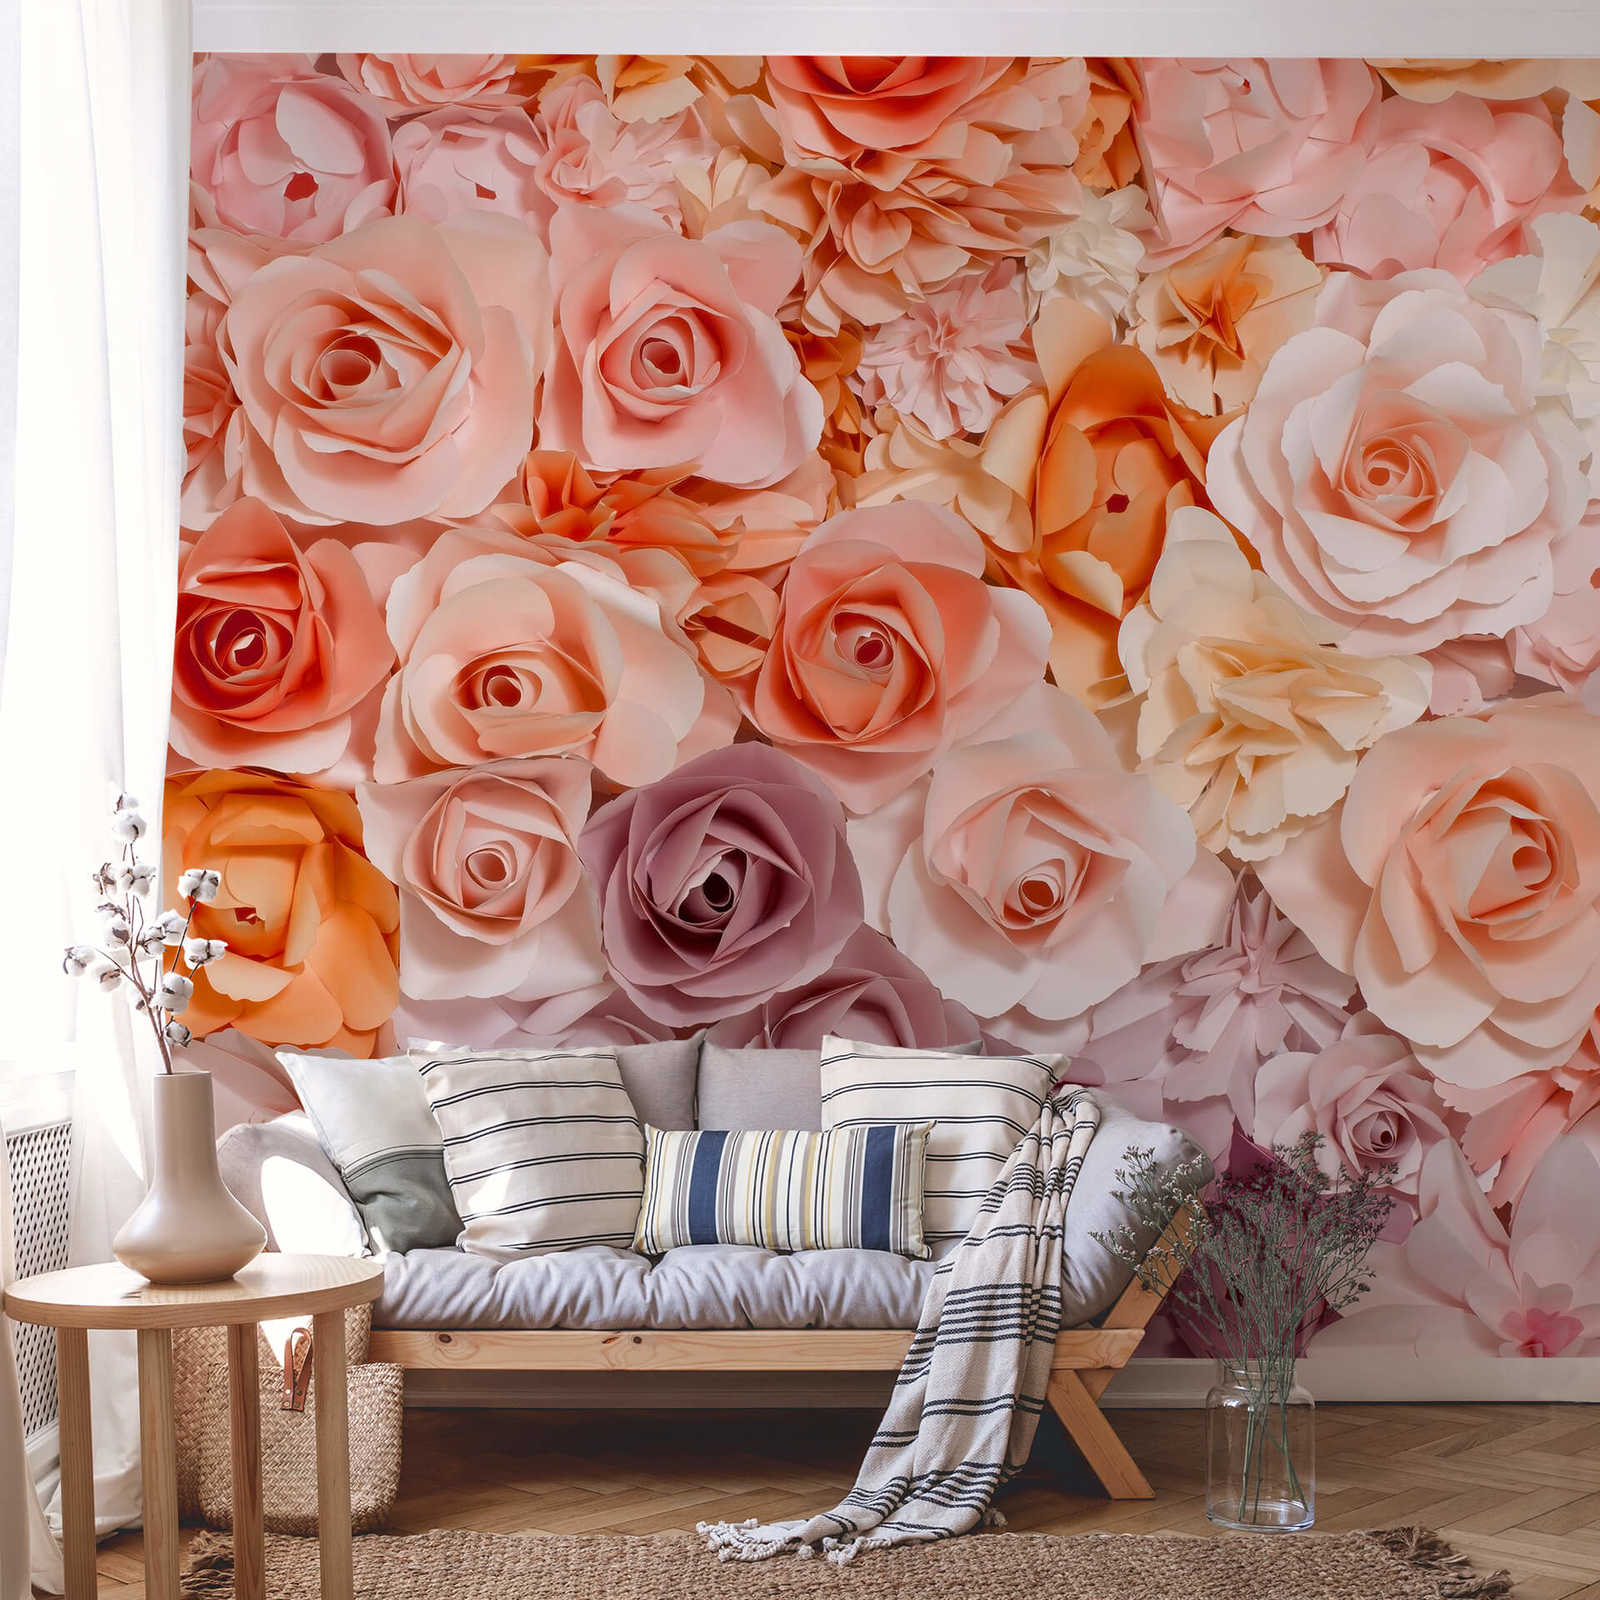             Papel pintado de rosas con motivos florales en 3D - rosa, blanco, naranja
        